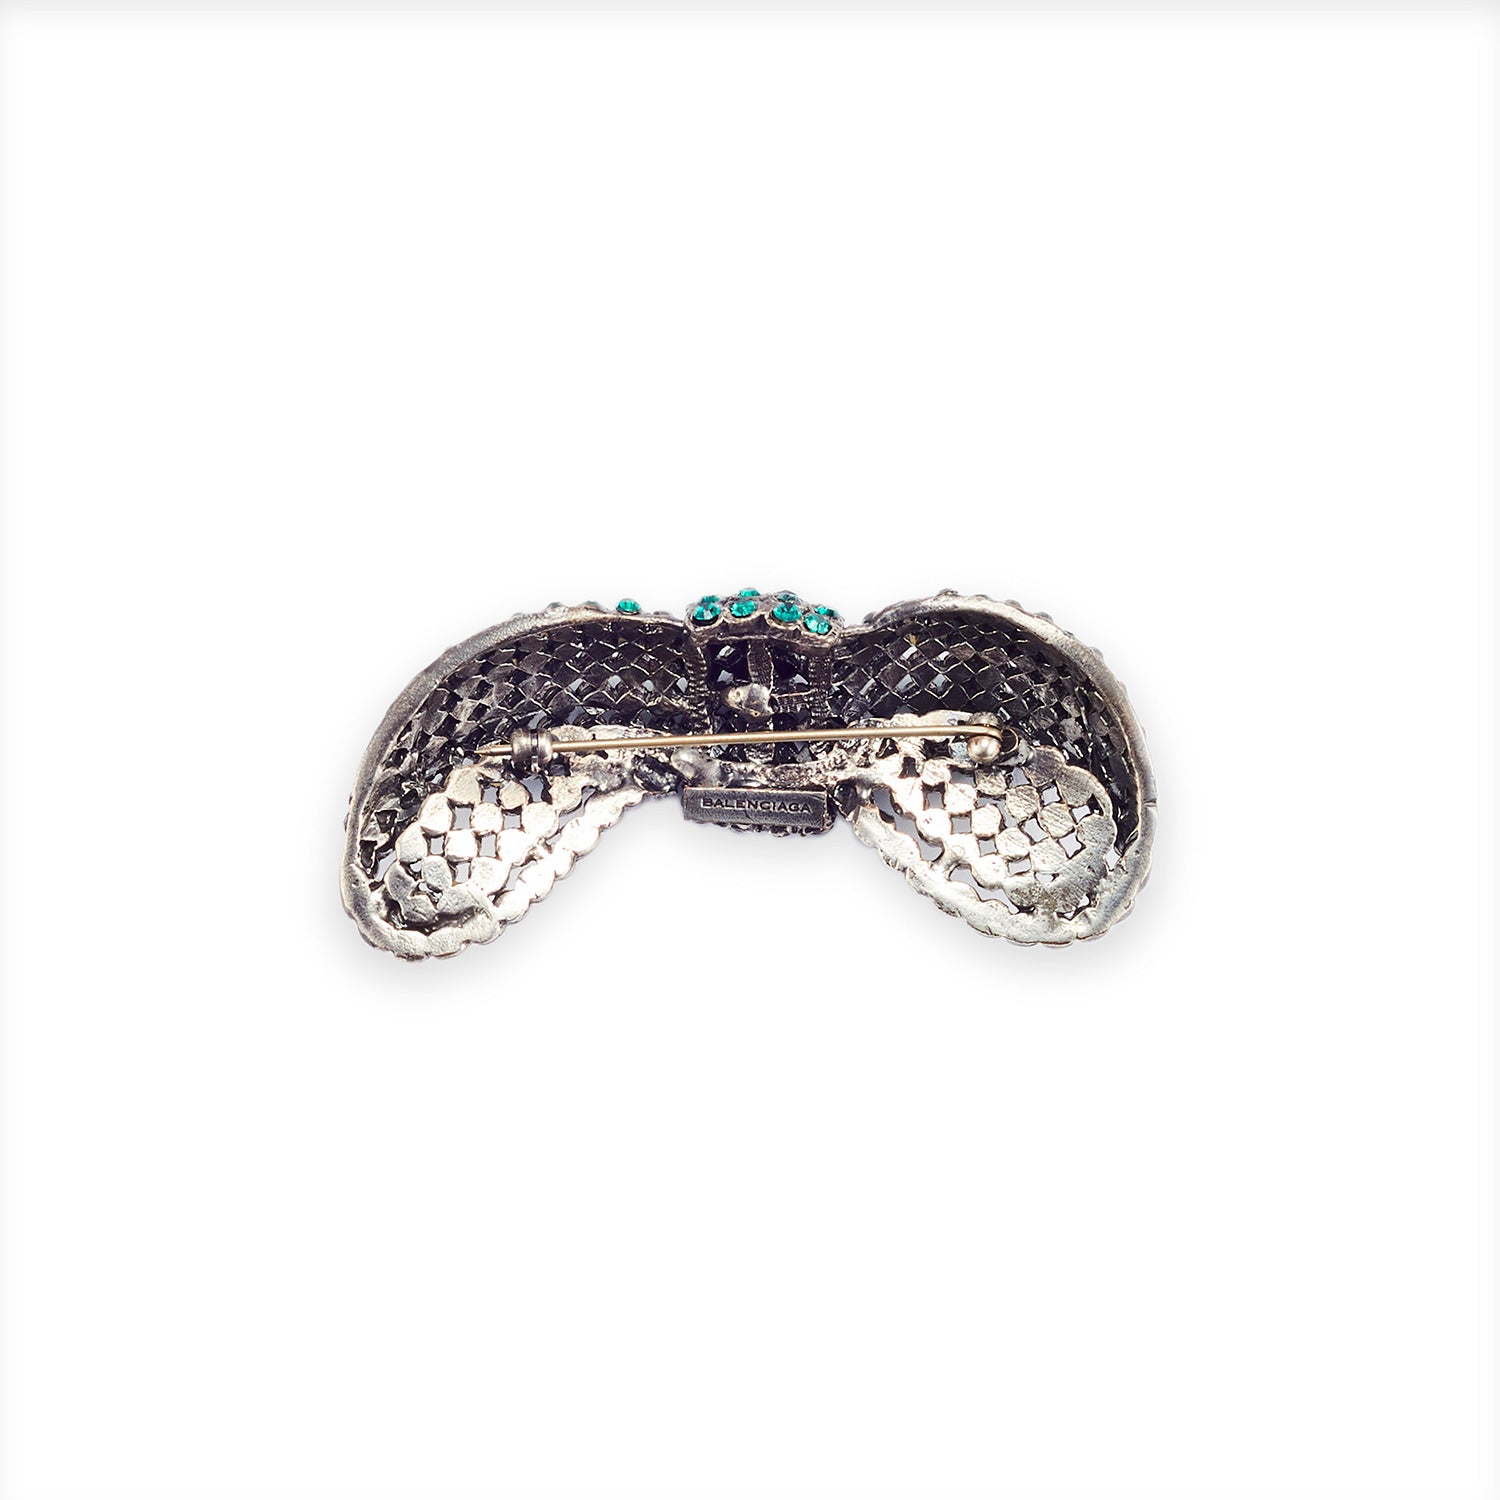 BALENCIAGA [バレンシアガ] / crystal ribbon brooch [クリスタル リボン ブローチ]